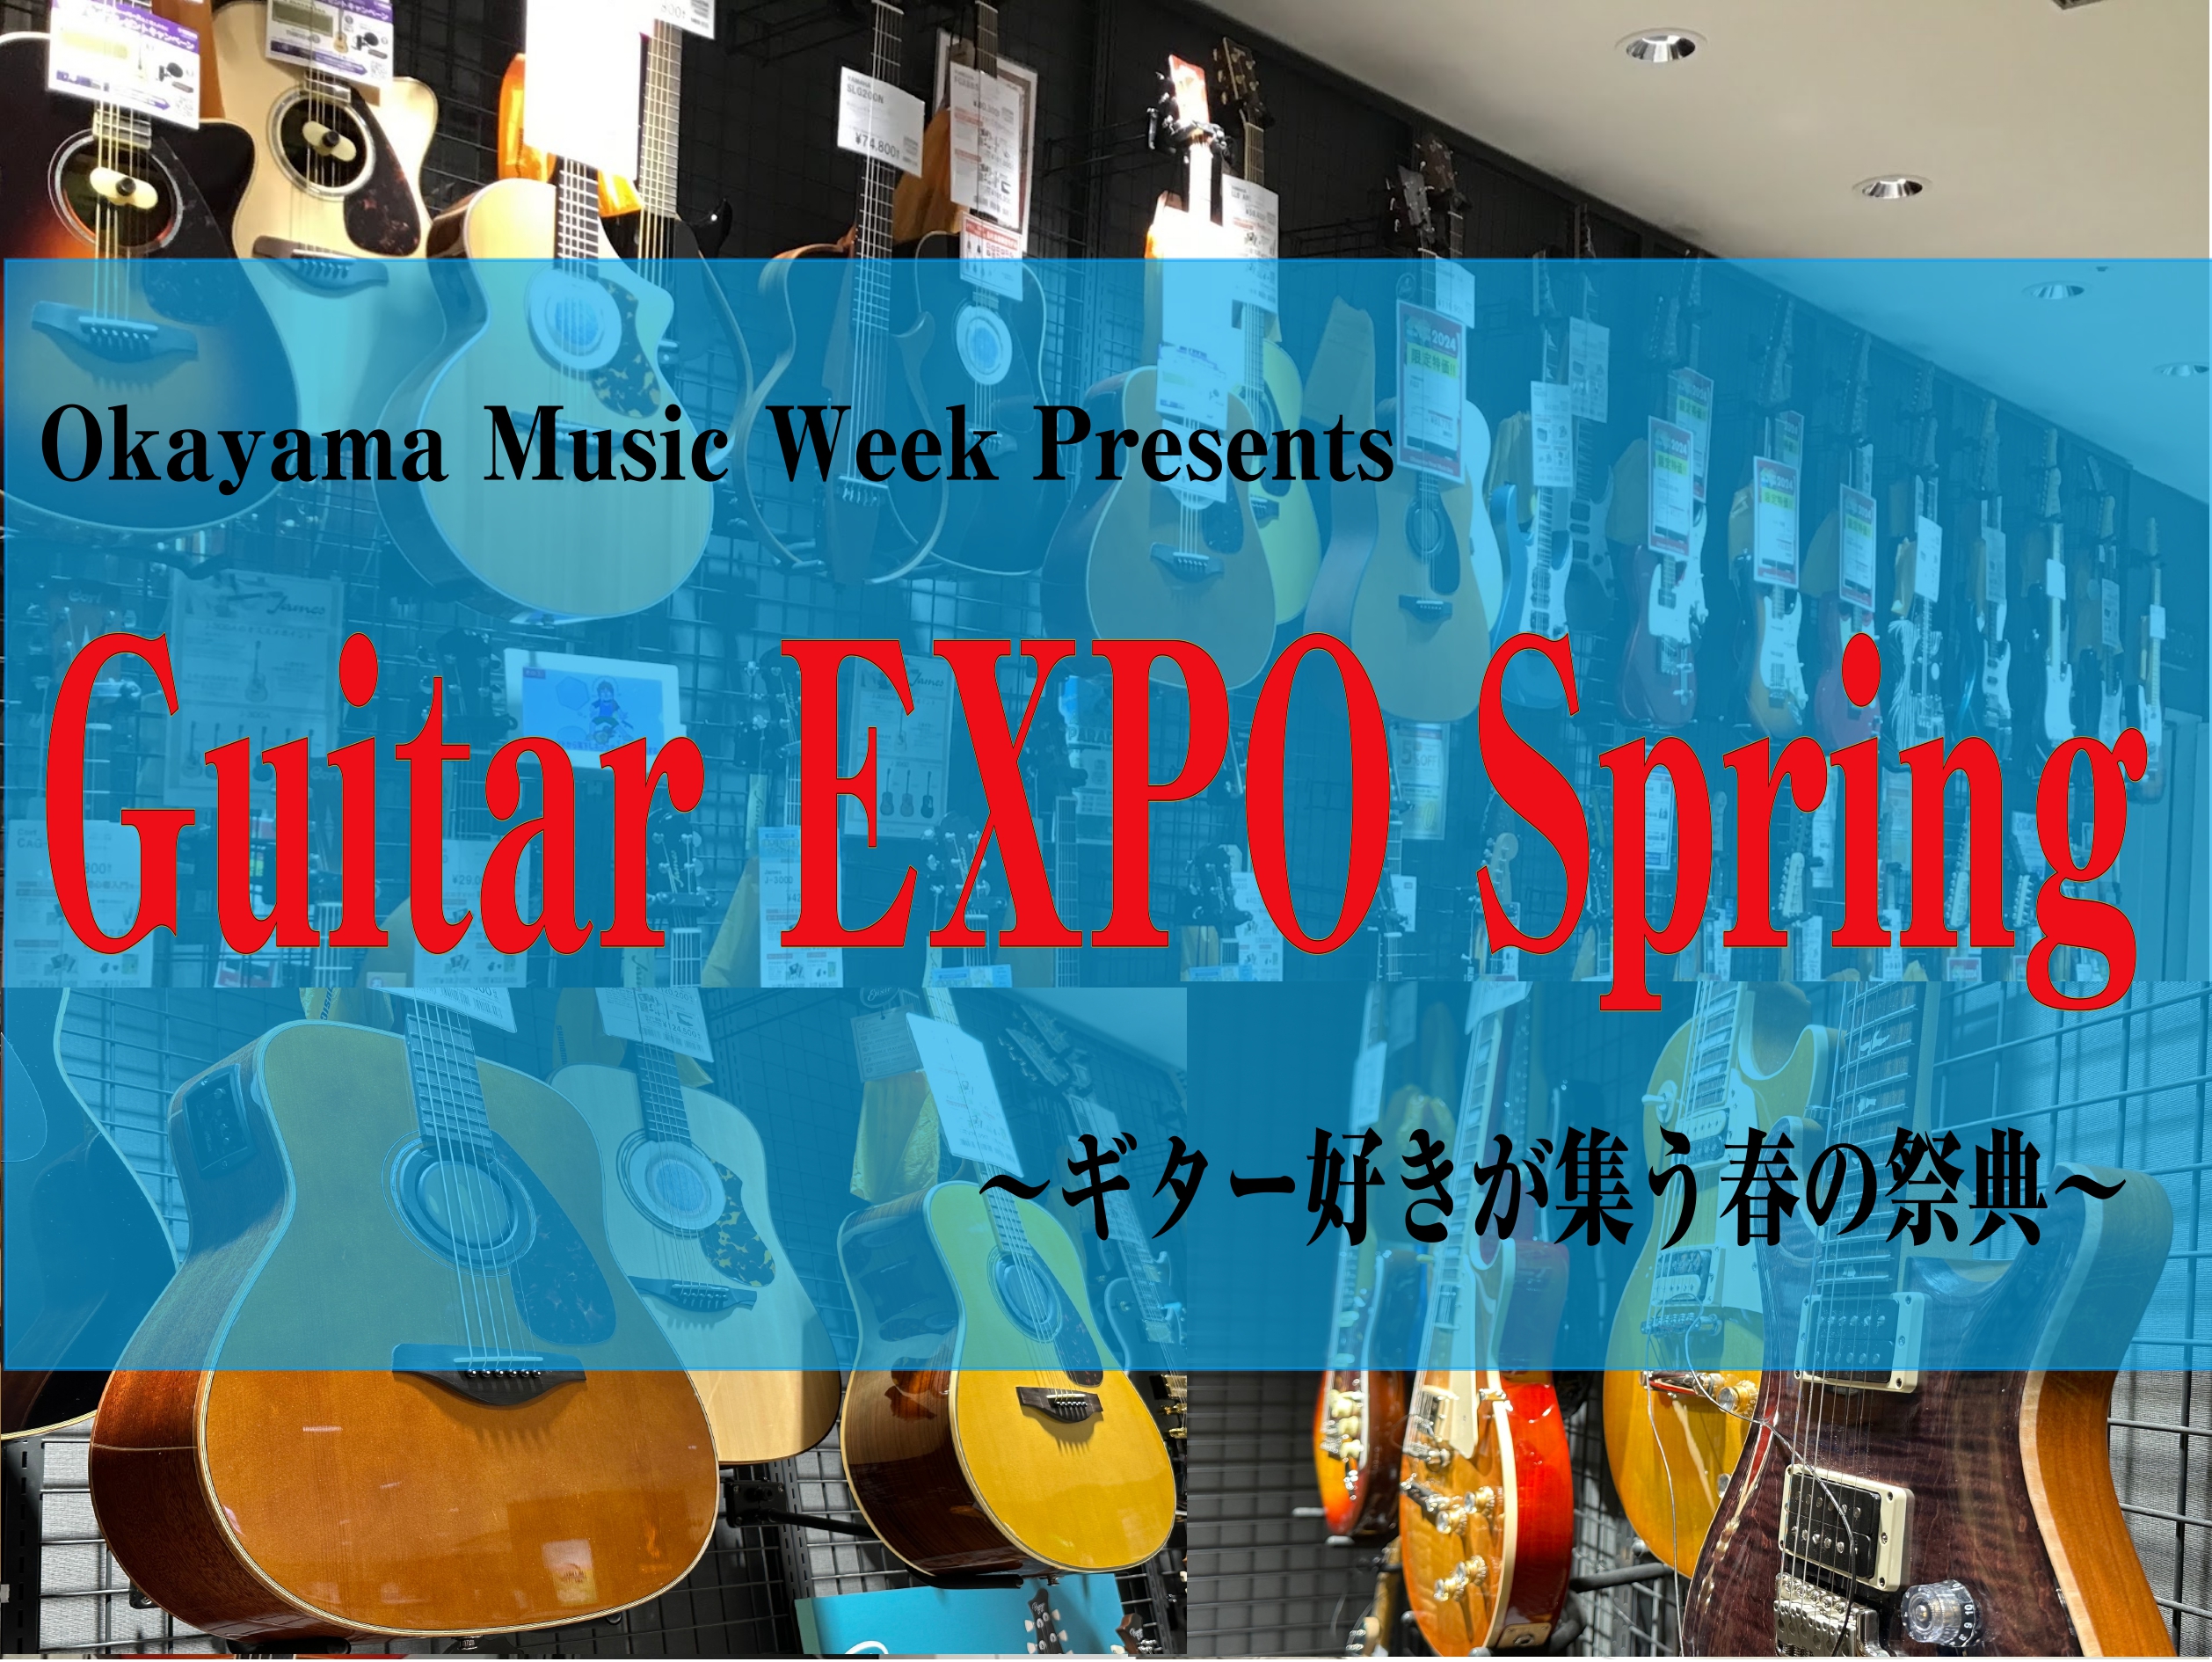 楽器好きの皆様に送る岡山店の楽器の祭典「岡山ミュージックウィーク」の一環として、 ギター好きの皆様の為のイベント「Guitar EXPO Spring」を開催いたします。 様々なギターメーカーの展示はもちろん、今回は岡山店で人気の国産老舗ブランドのK.Yairiさんによるギター点検会も開催いたします […]